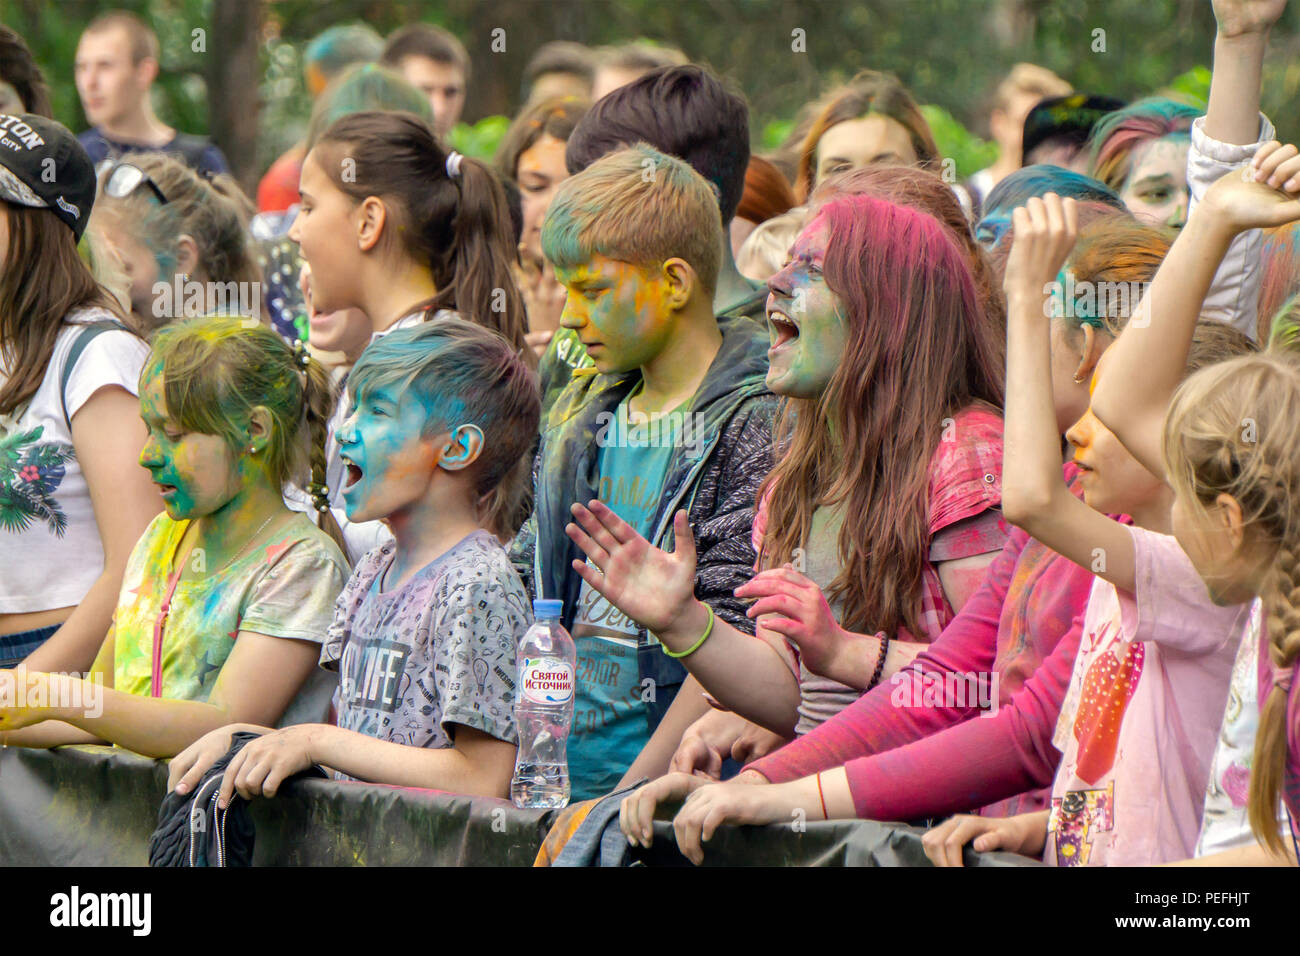 DZERZHINSK, Russia - 19 Maggio 2018: Felice giovani ragazzi celebra la festa di colori e di musica. Facce e capelli decorate con Holi di polvere colorata. Foto Stock